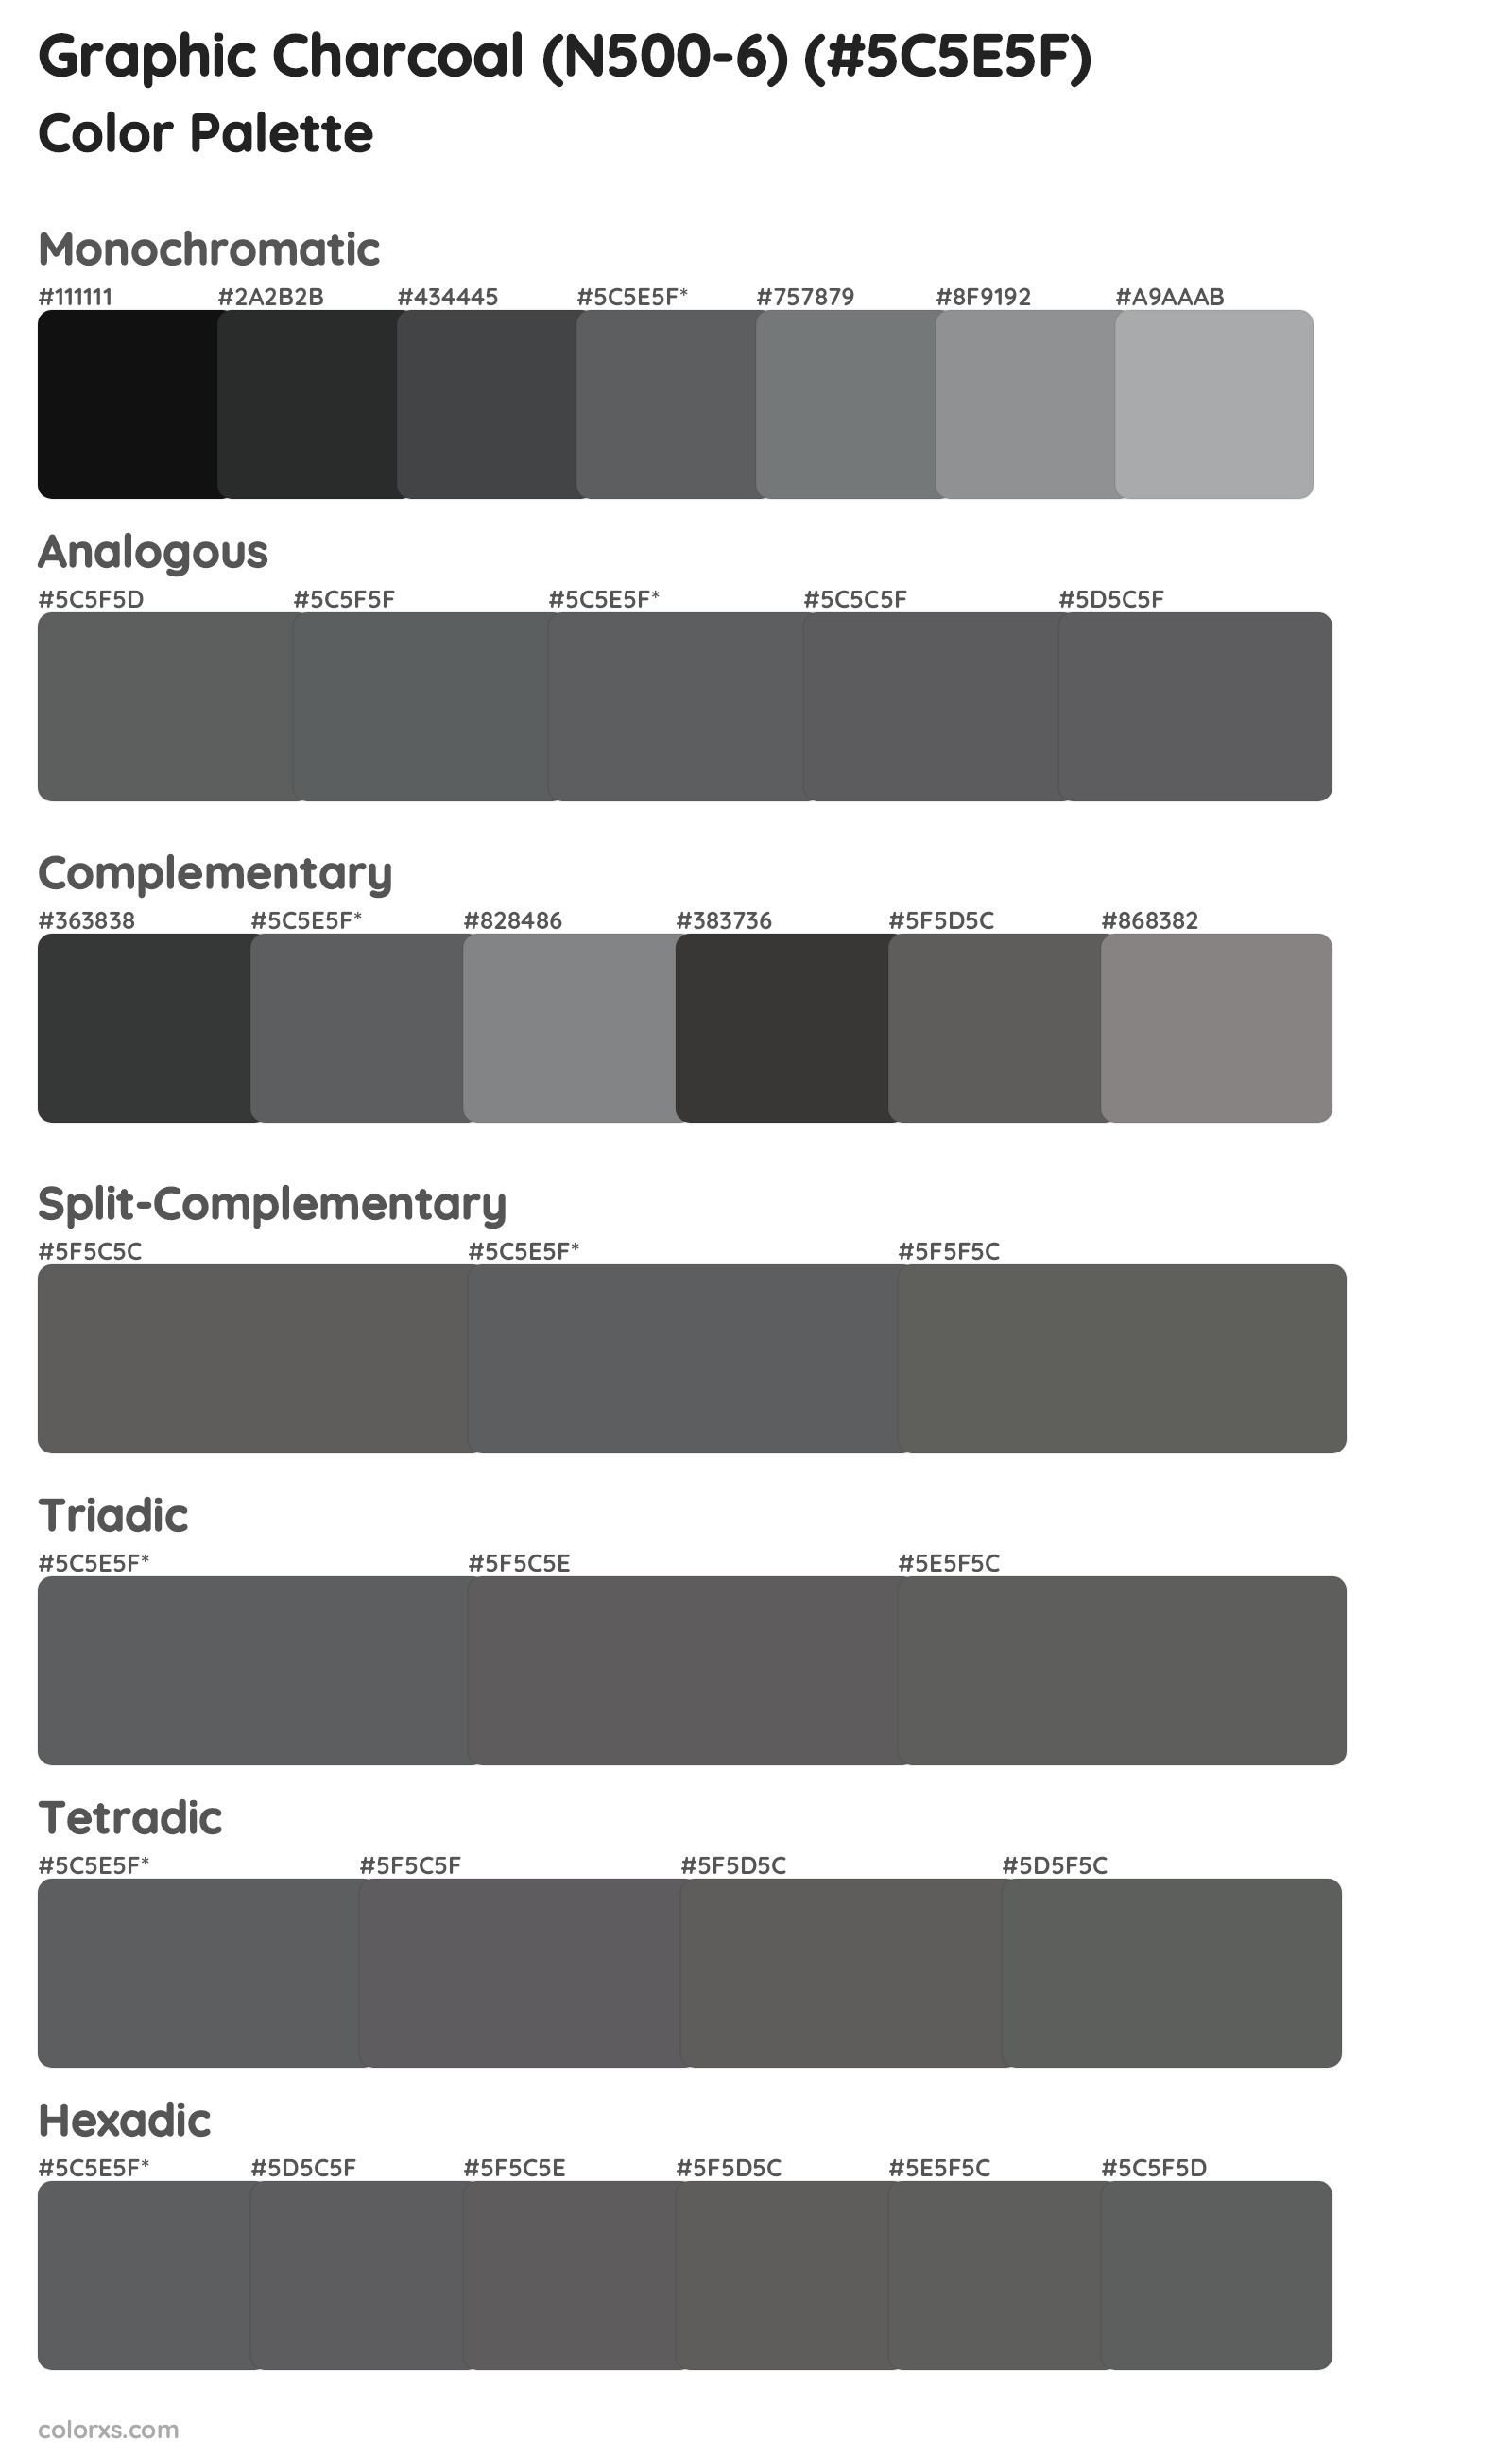 Graphic Charcoal (N500-6) Color Scheme Palettes